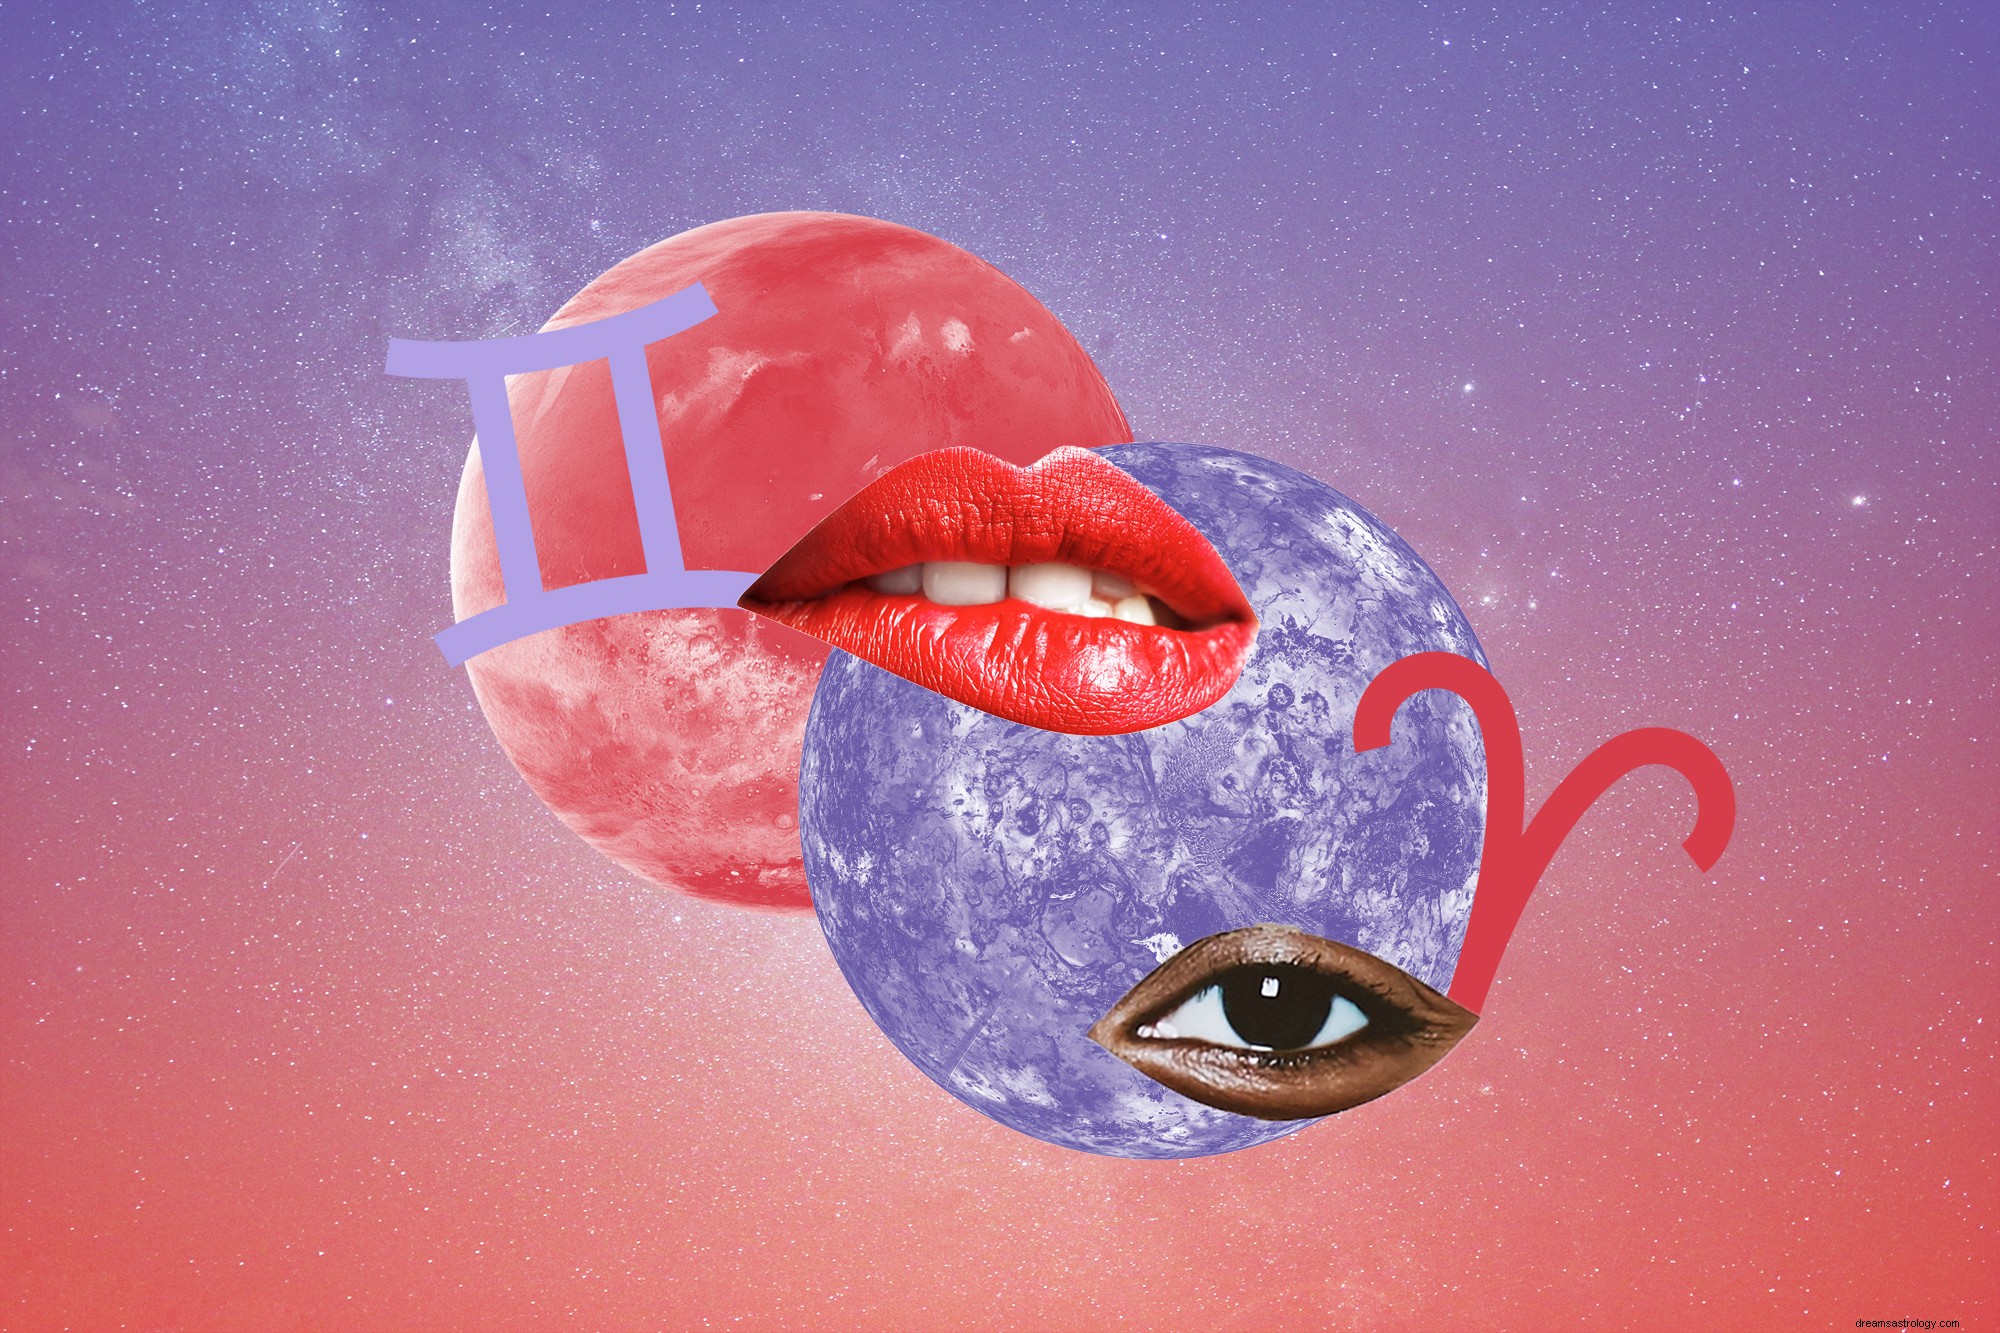 Vênus e Marte — os planetas do romance e do sexo — vão agitar sua vida amorosa nesta primavera 